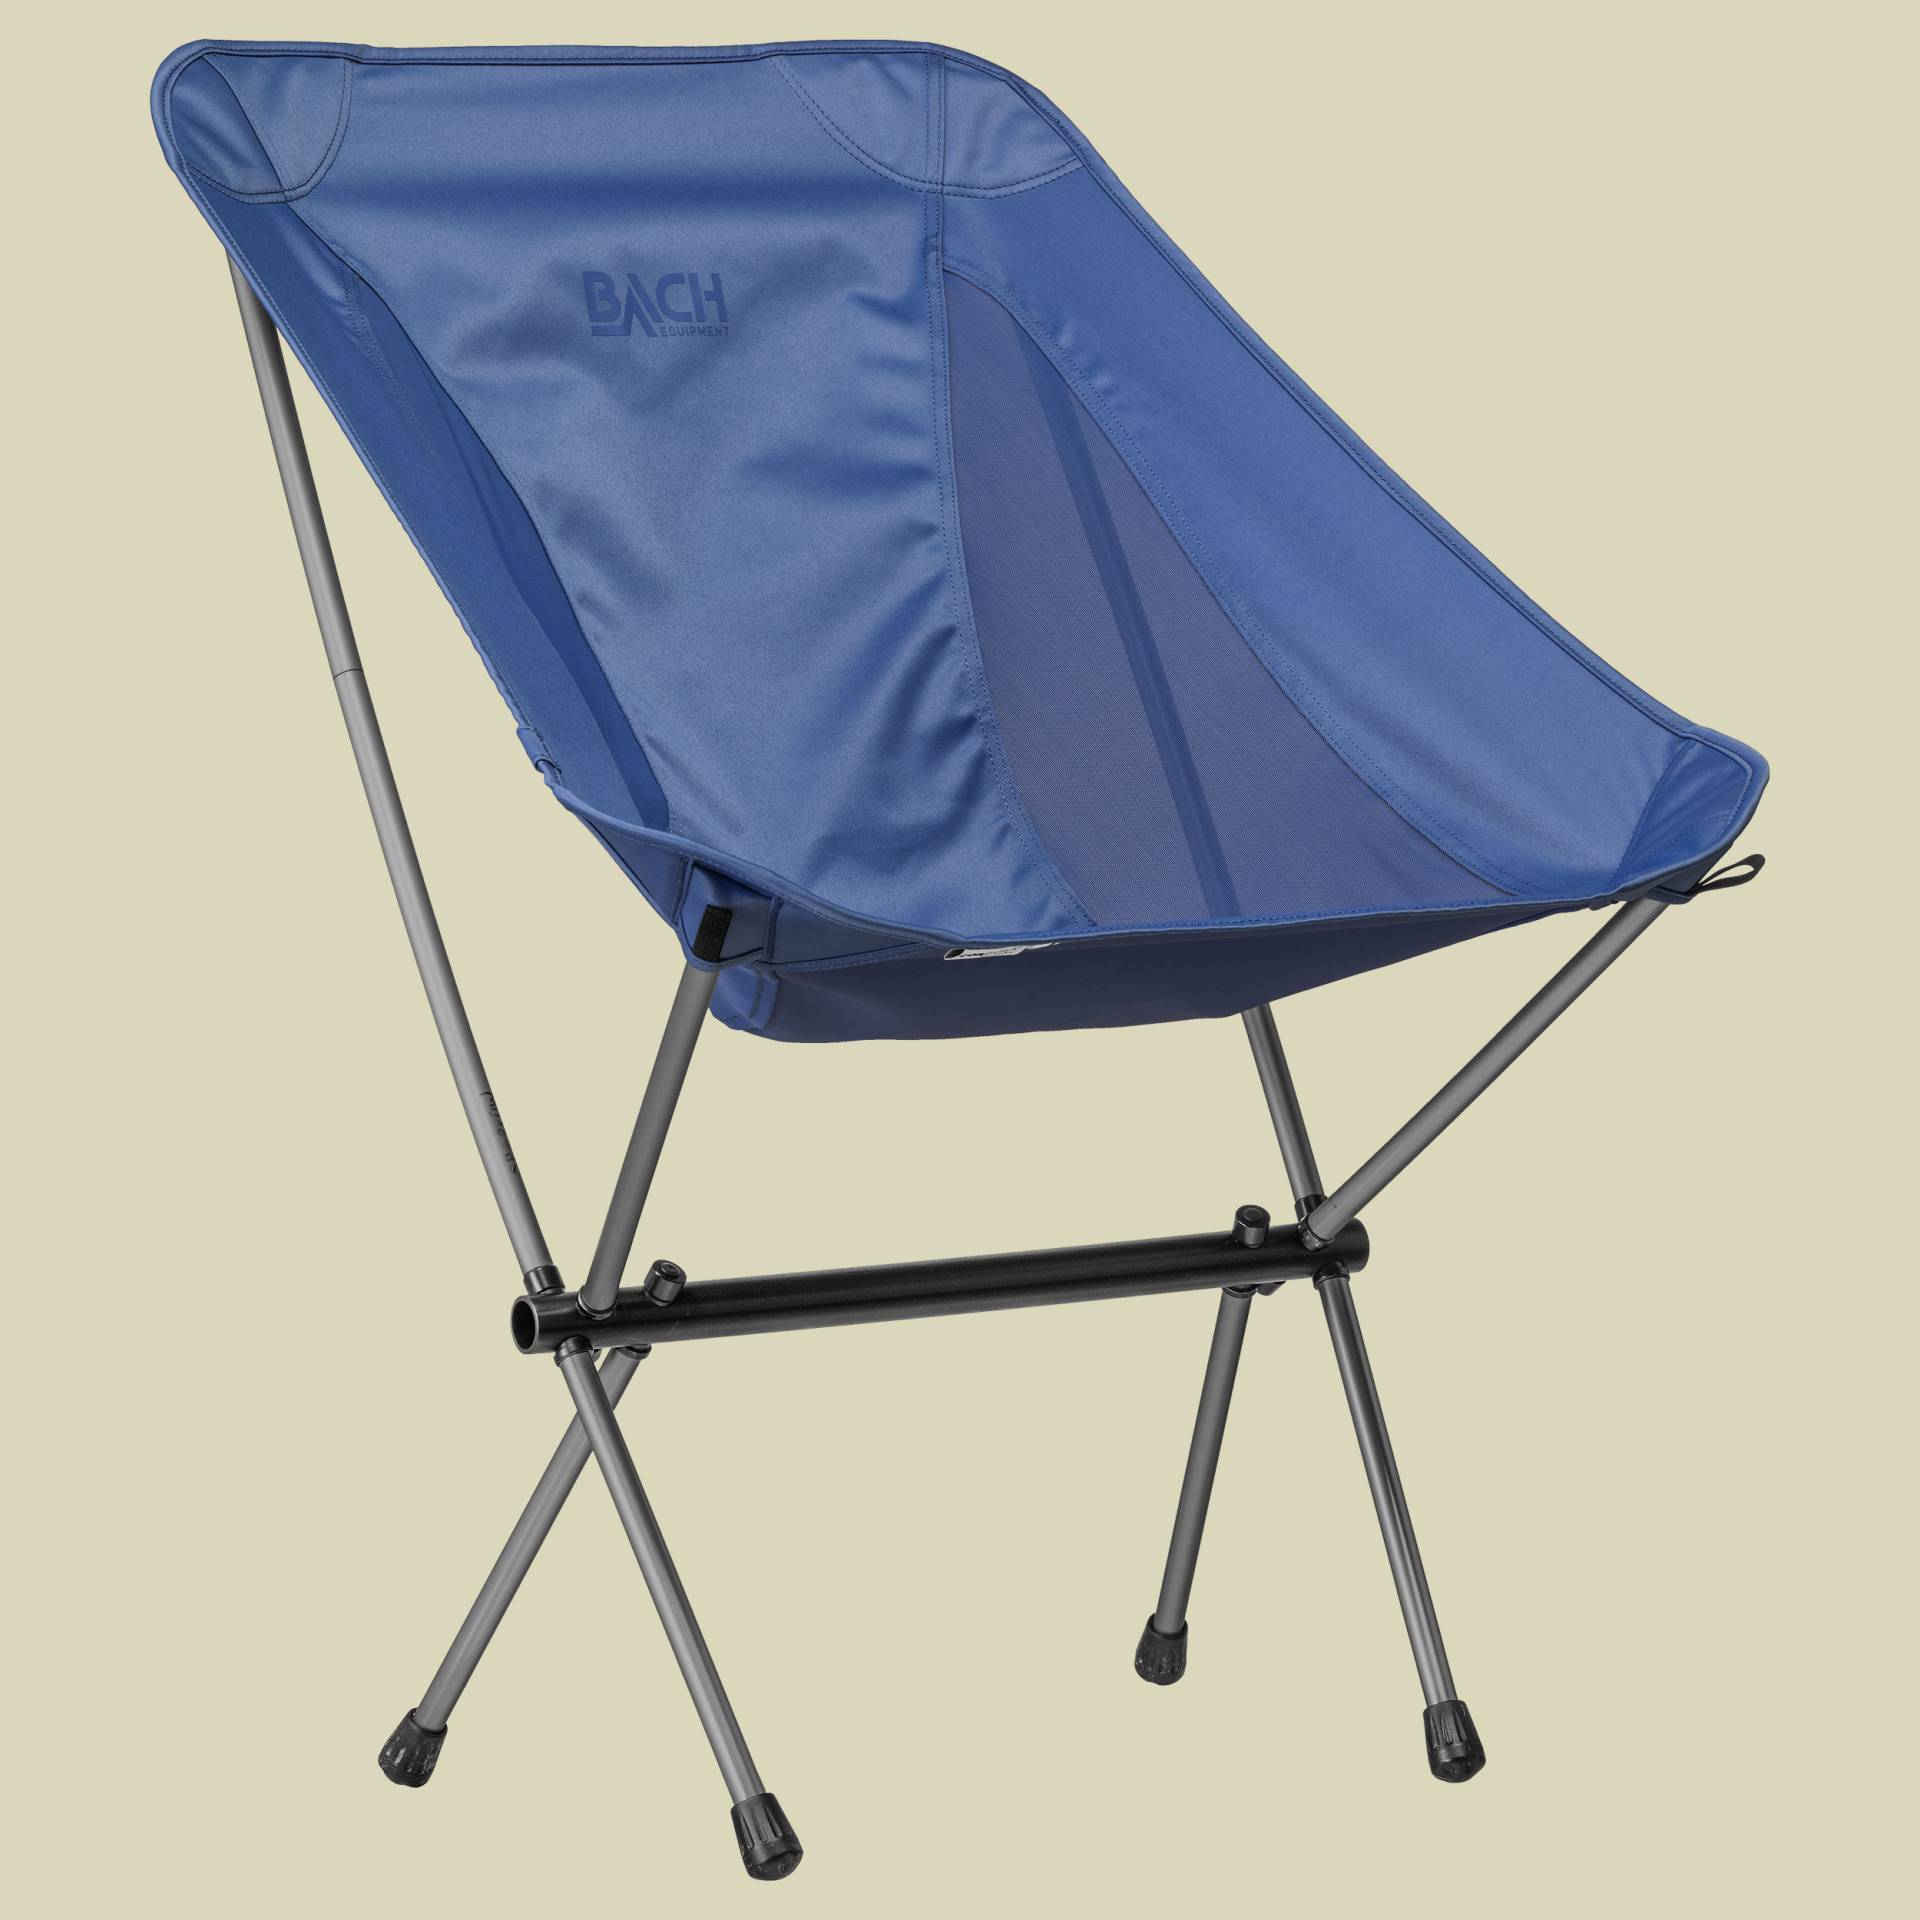 Chair Kiwi Größe one size Farbe riviera blue von Bach